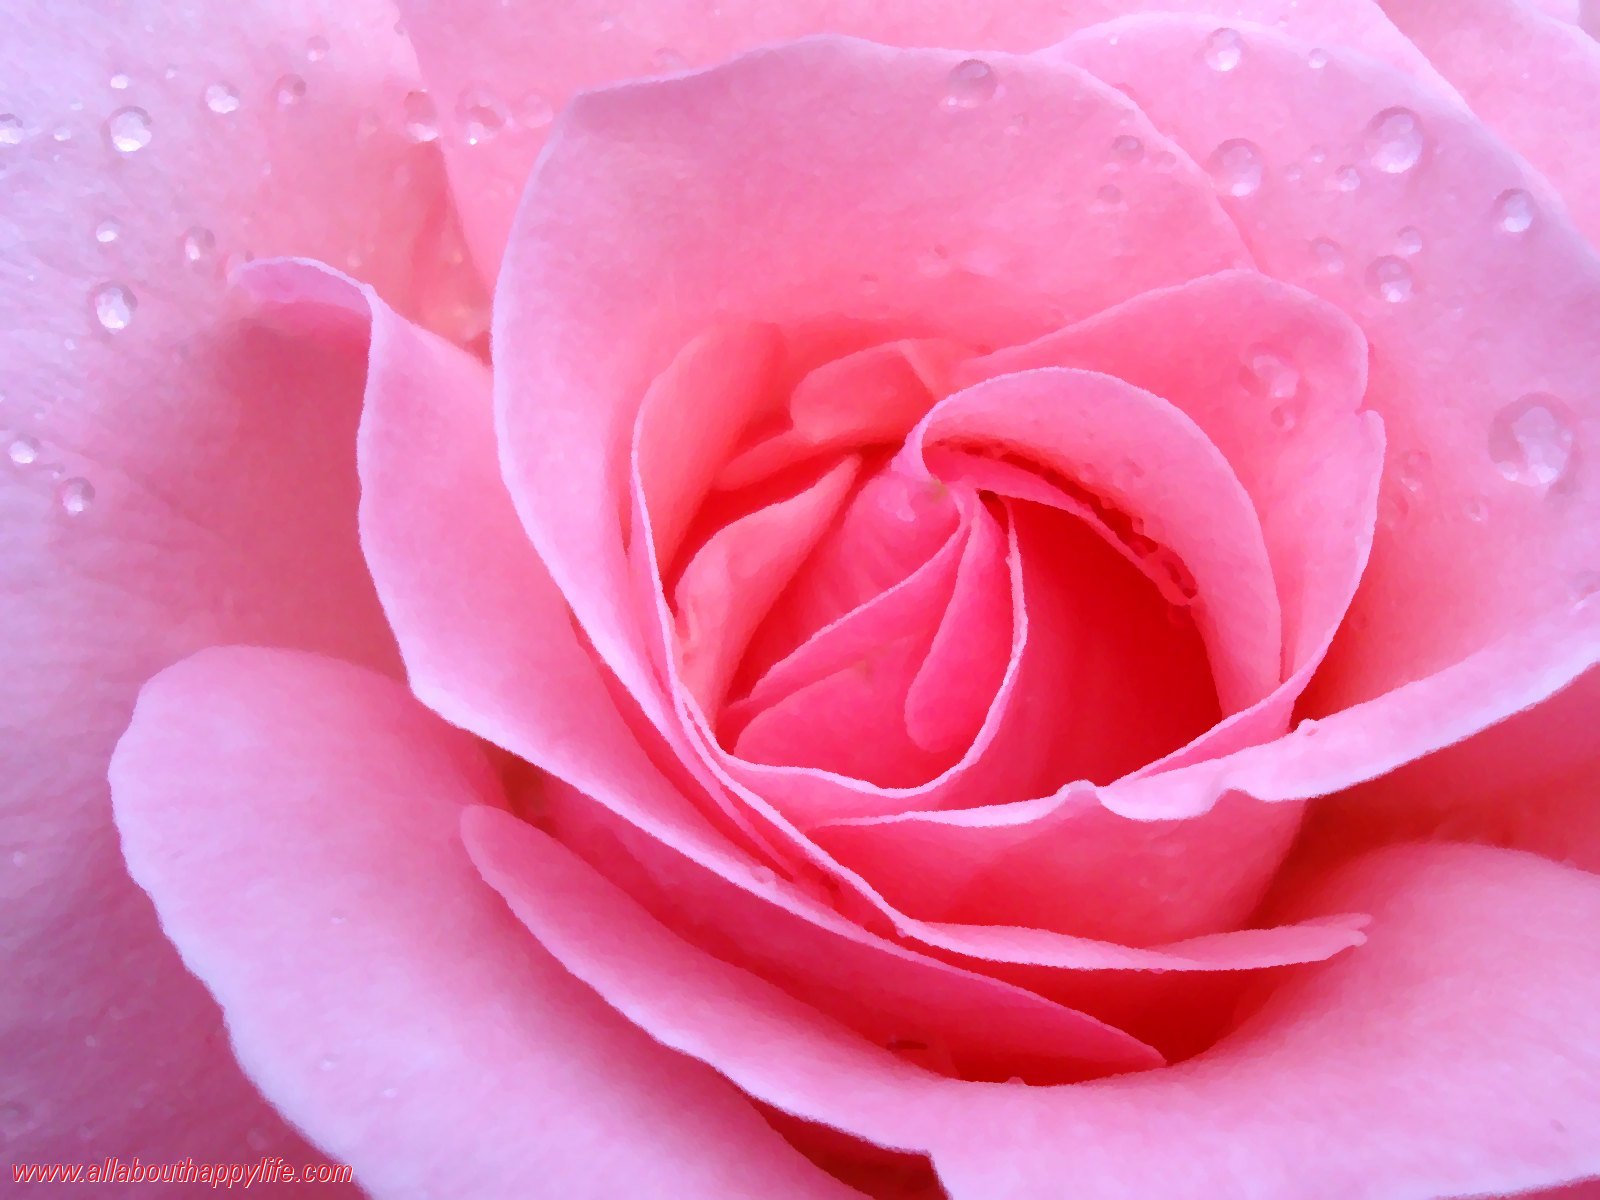 liebe rose tapete,blütenblatt,gartenrosen,rosa,rose,blume